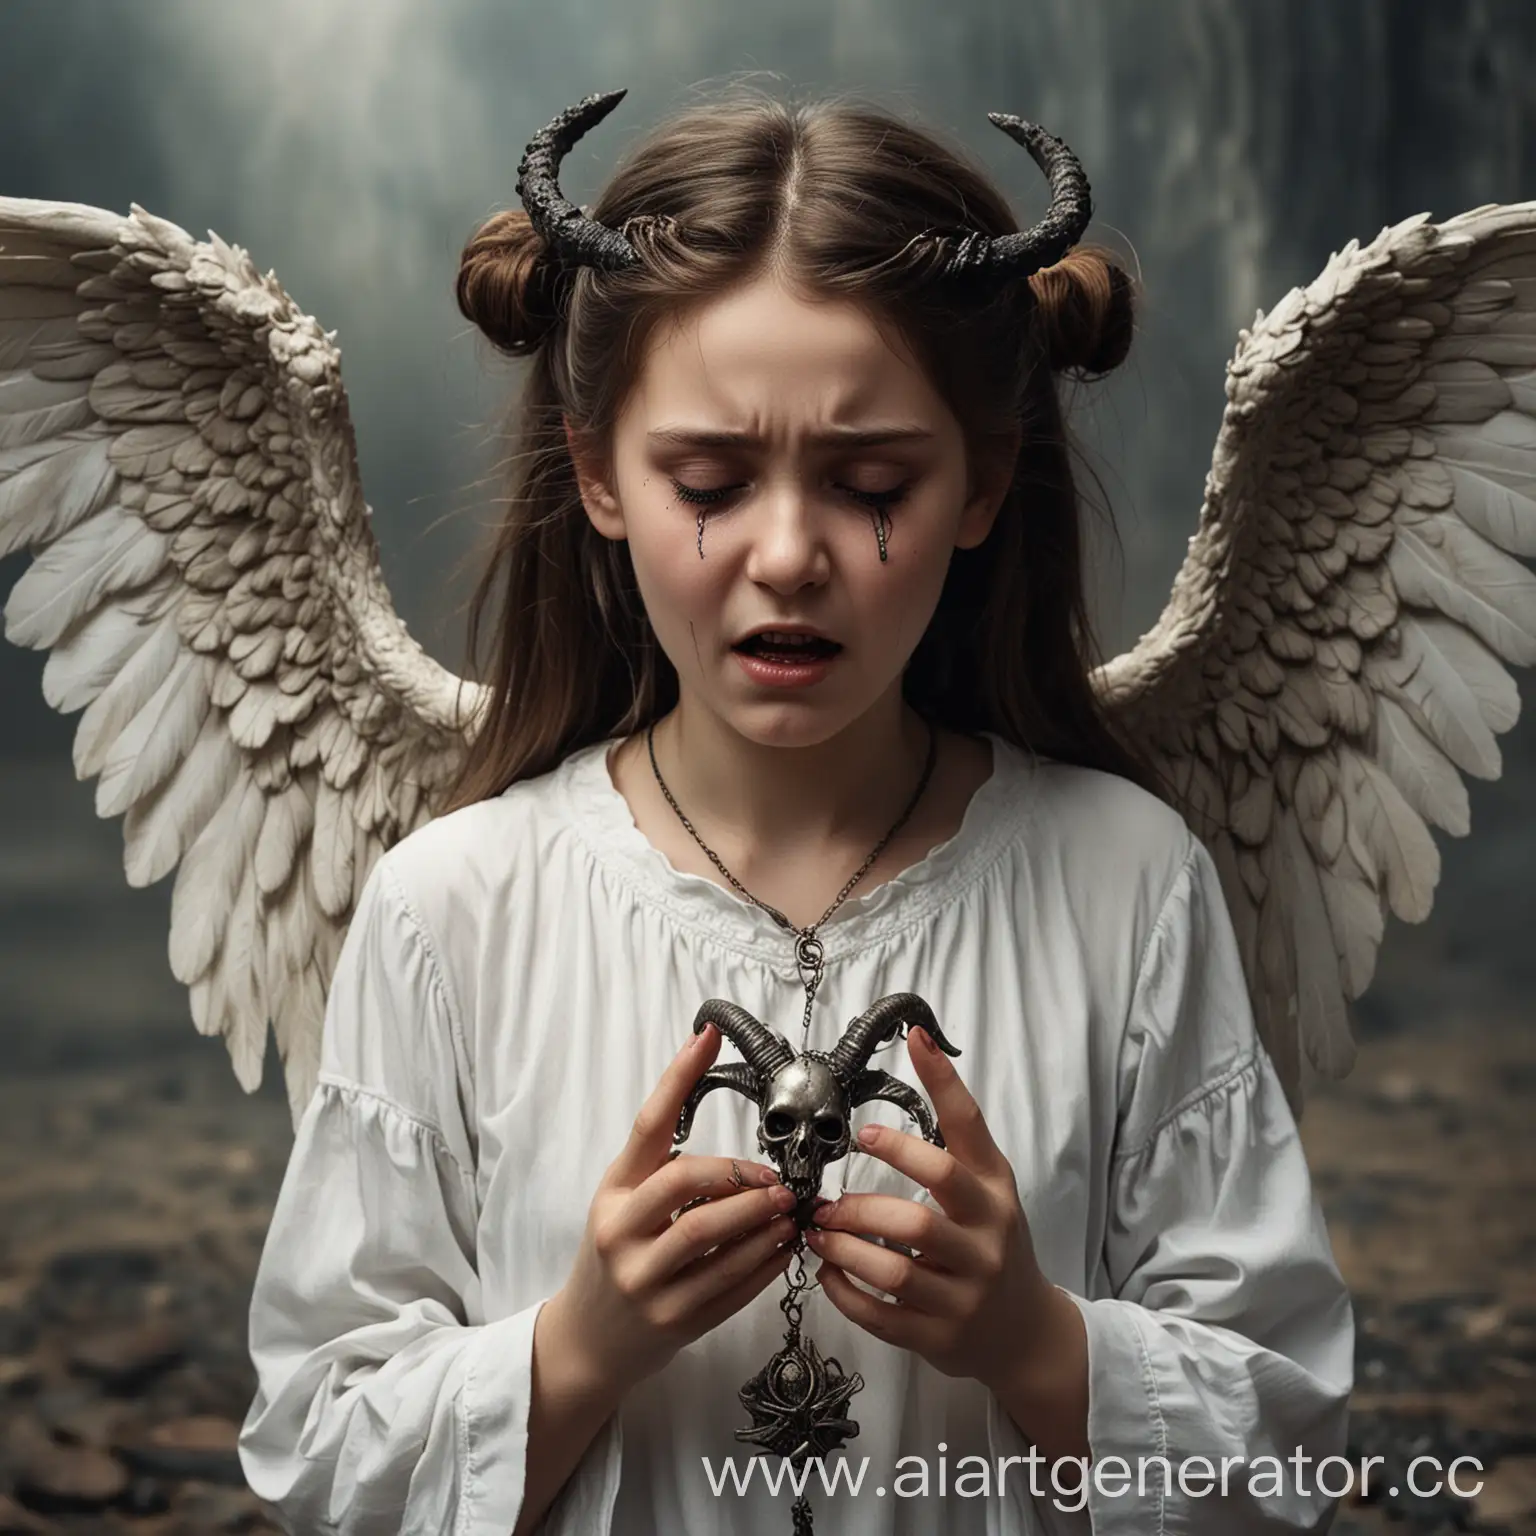 Девушка-падший ангел с рожками,плача,сжимает в руках амулет